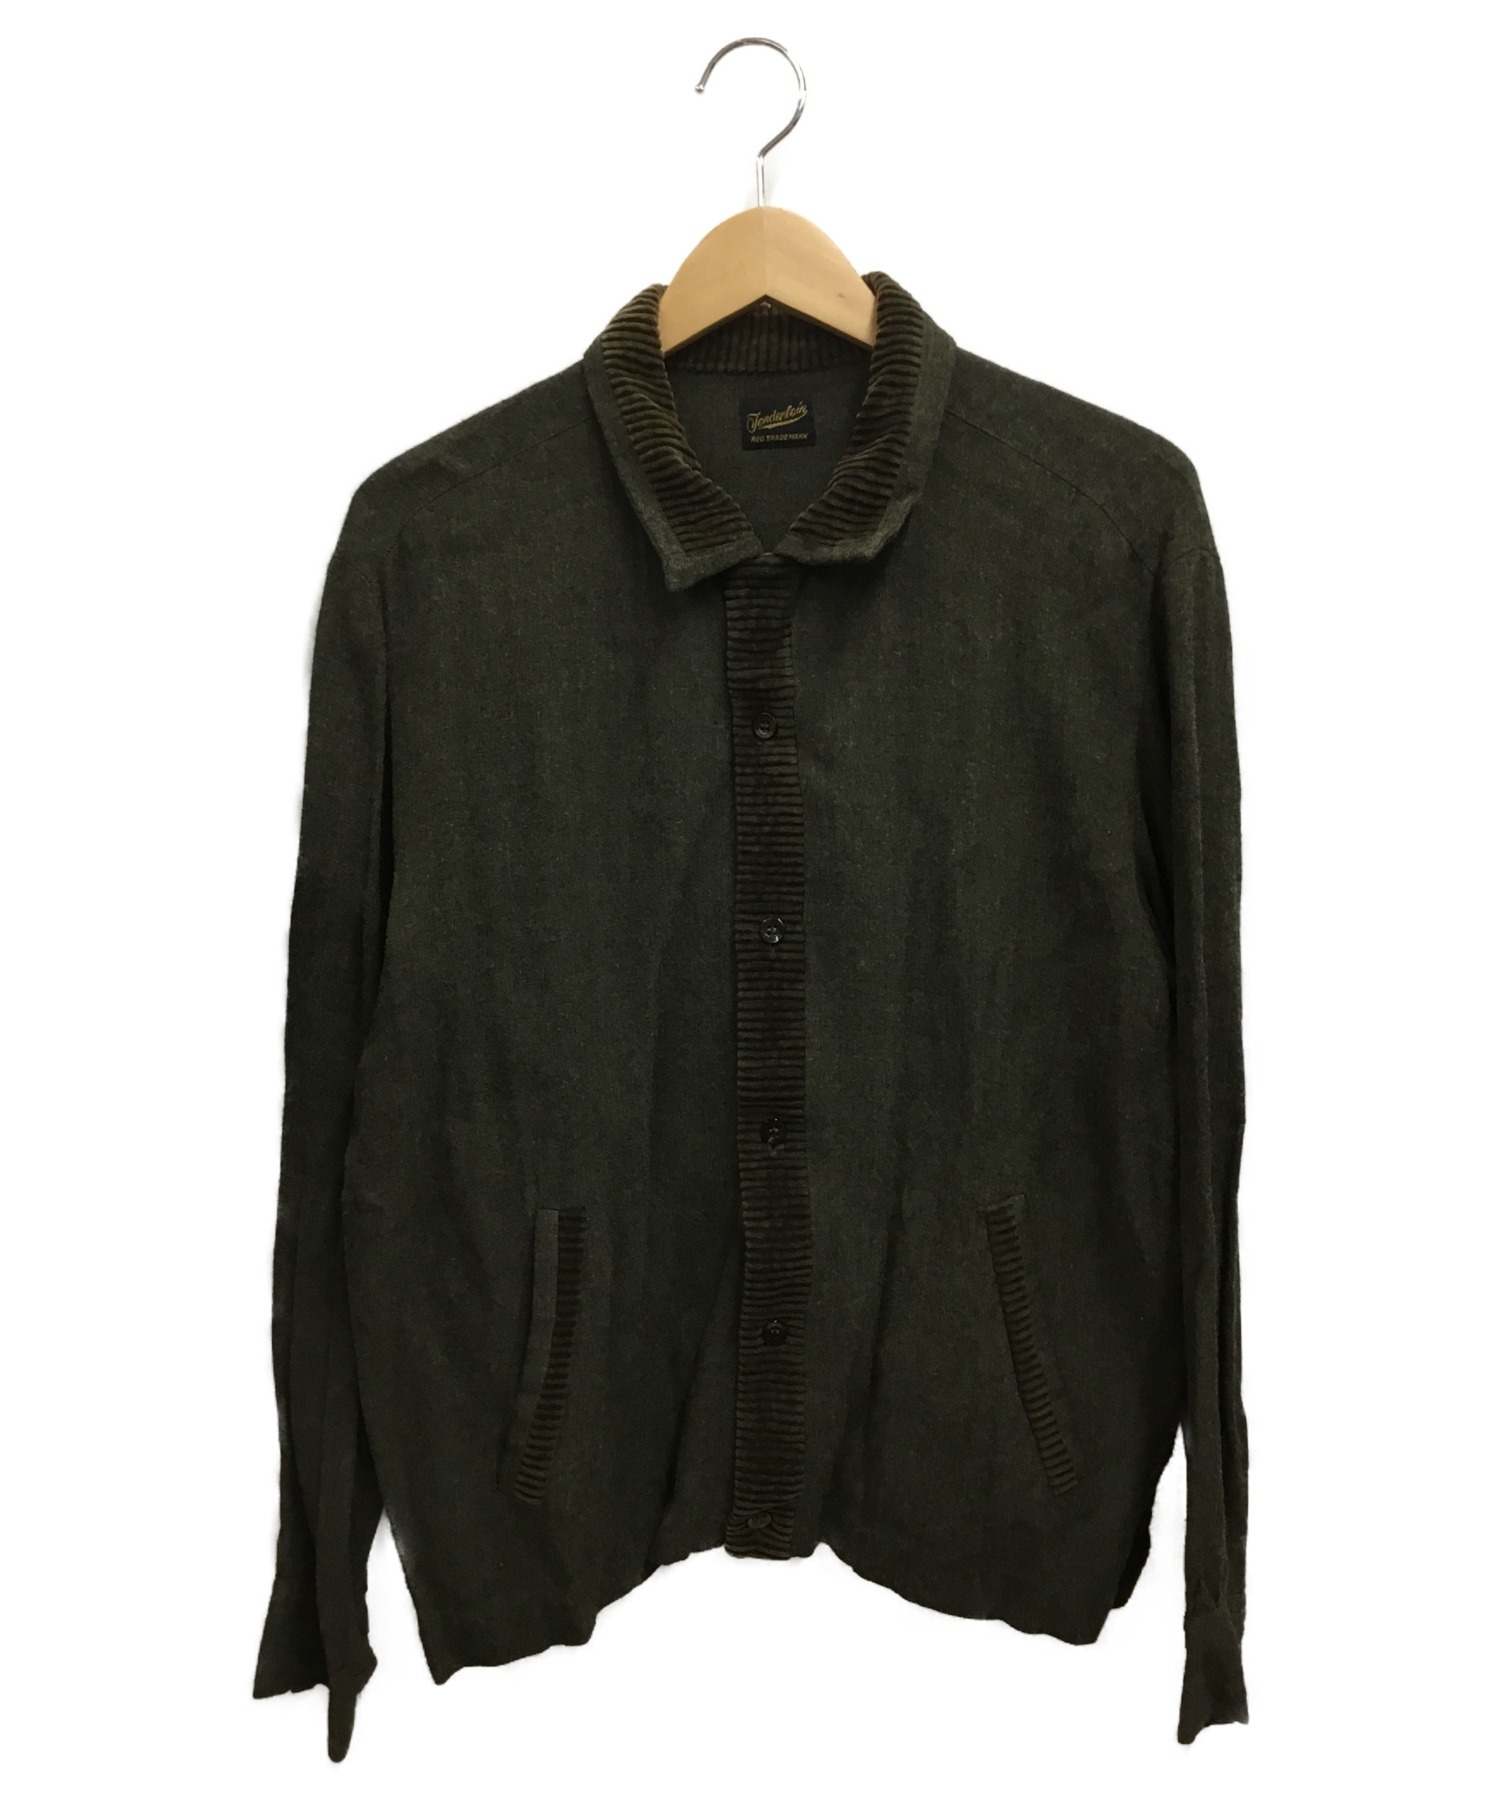 TENDERLOIN (テンダーロイン) オープンカラーシャツ グリーン サイズ:M